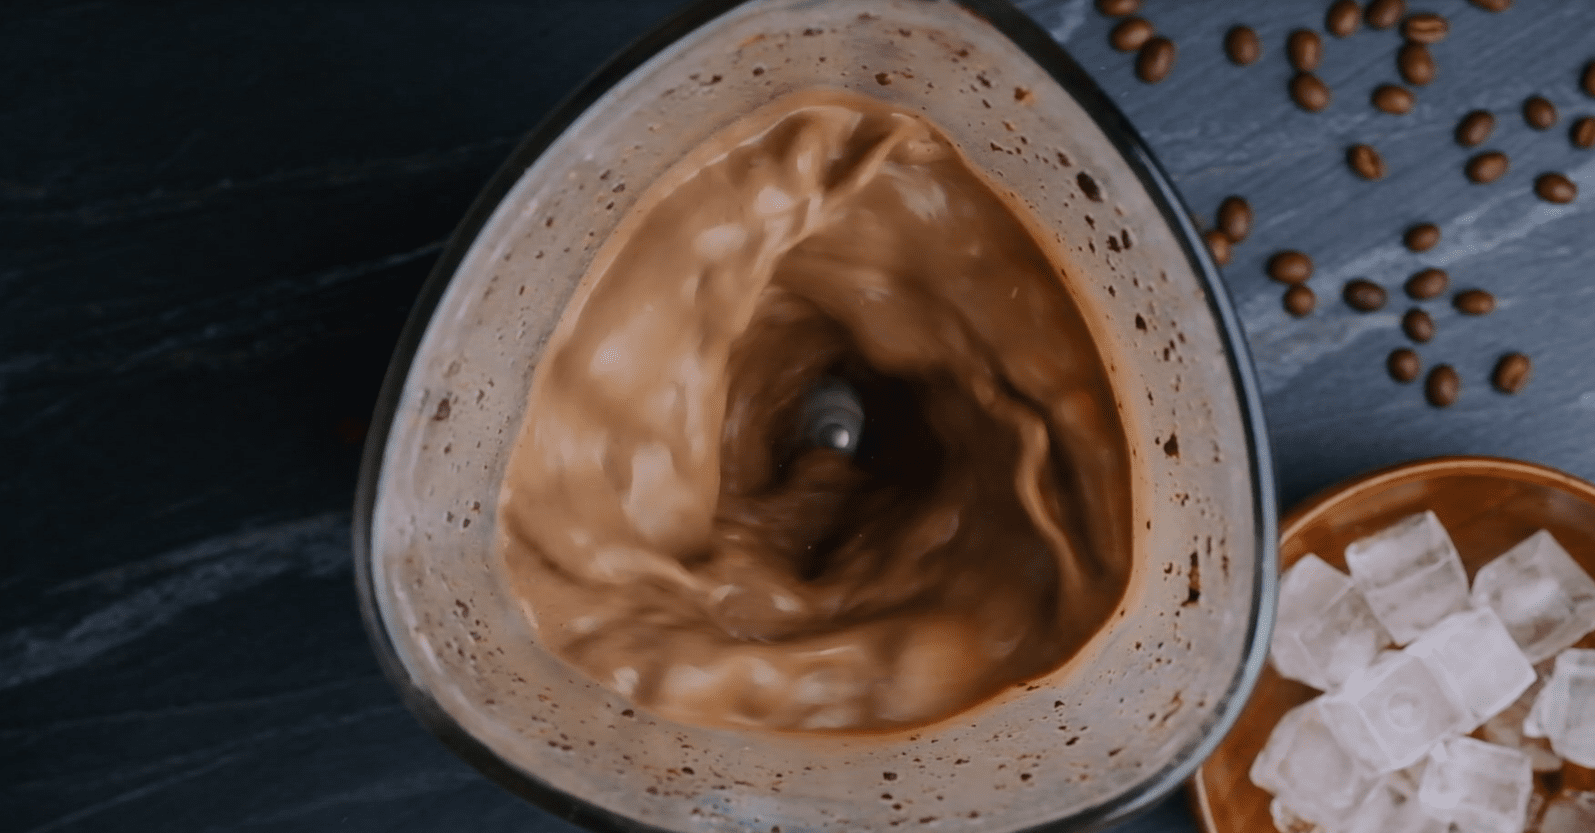 Deliciosa receta de frappuccino con crumble de galleta y moca de Starbucks